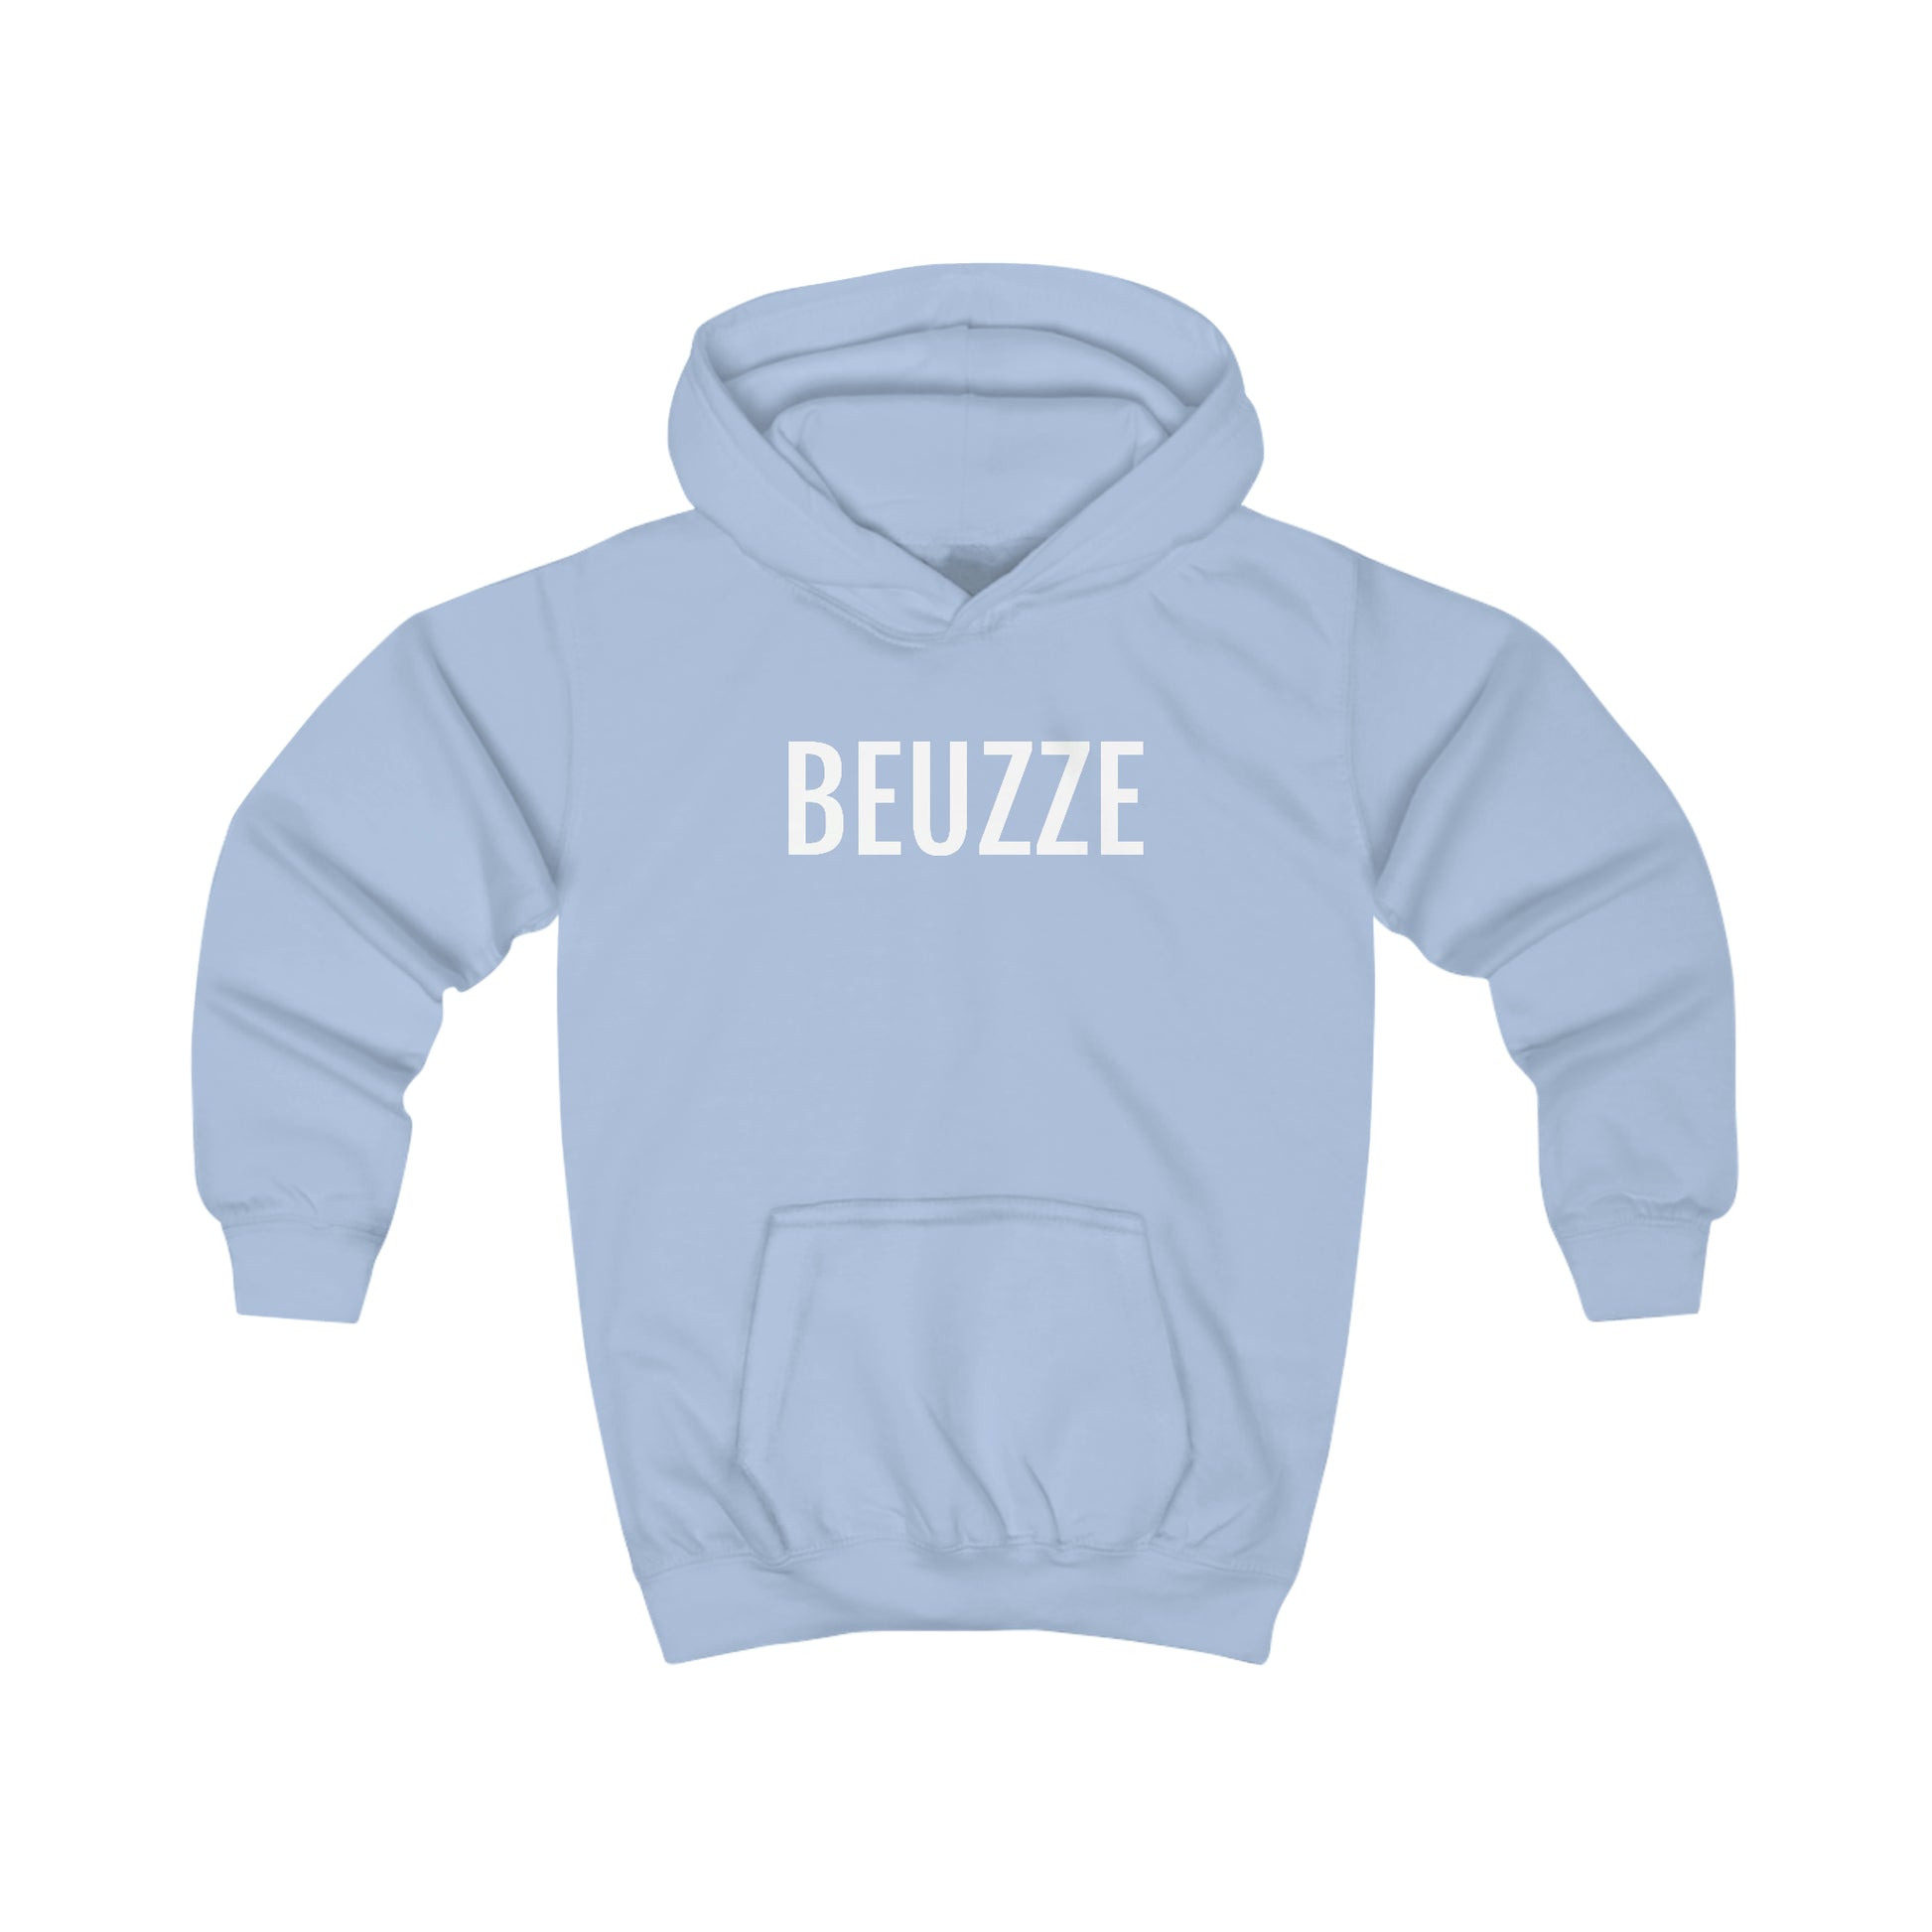 Brusselse woorden en uitdrukkingen op hoodies voor kinderen - Lichtblauw